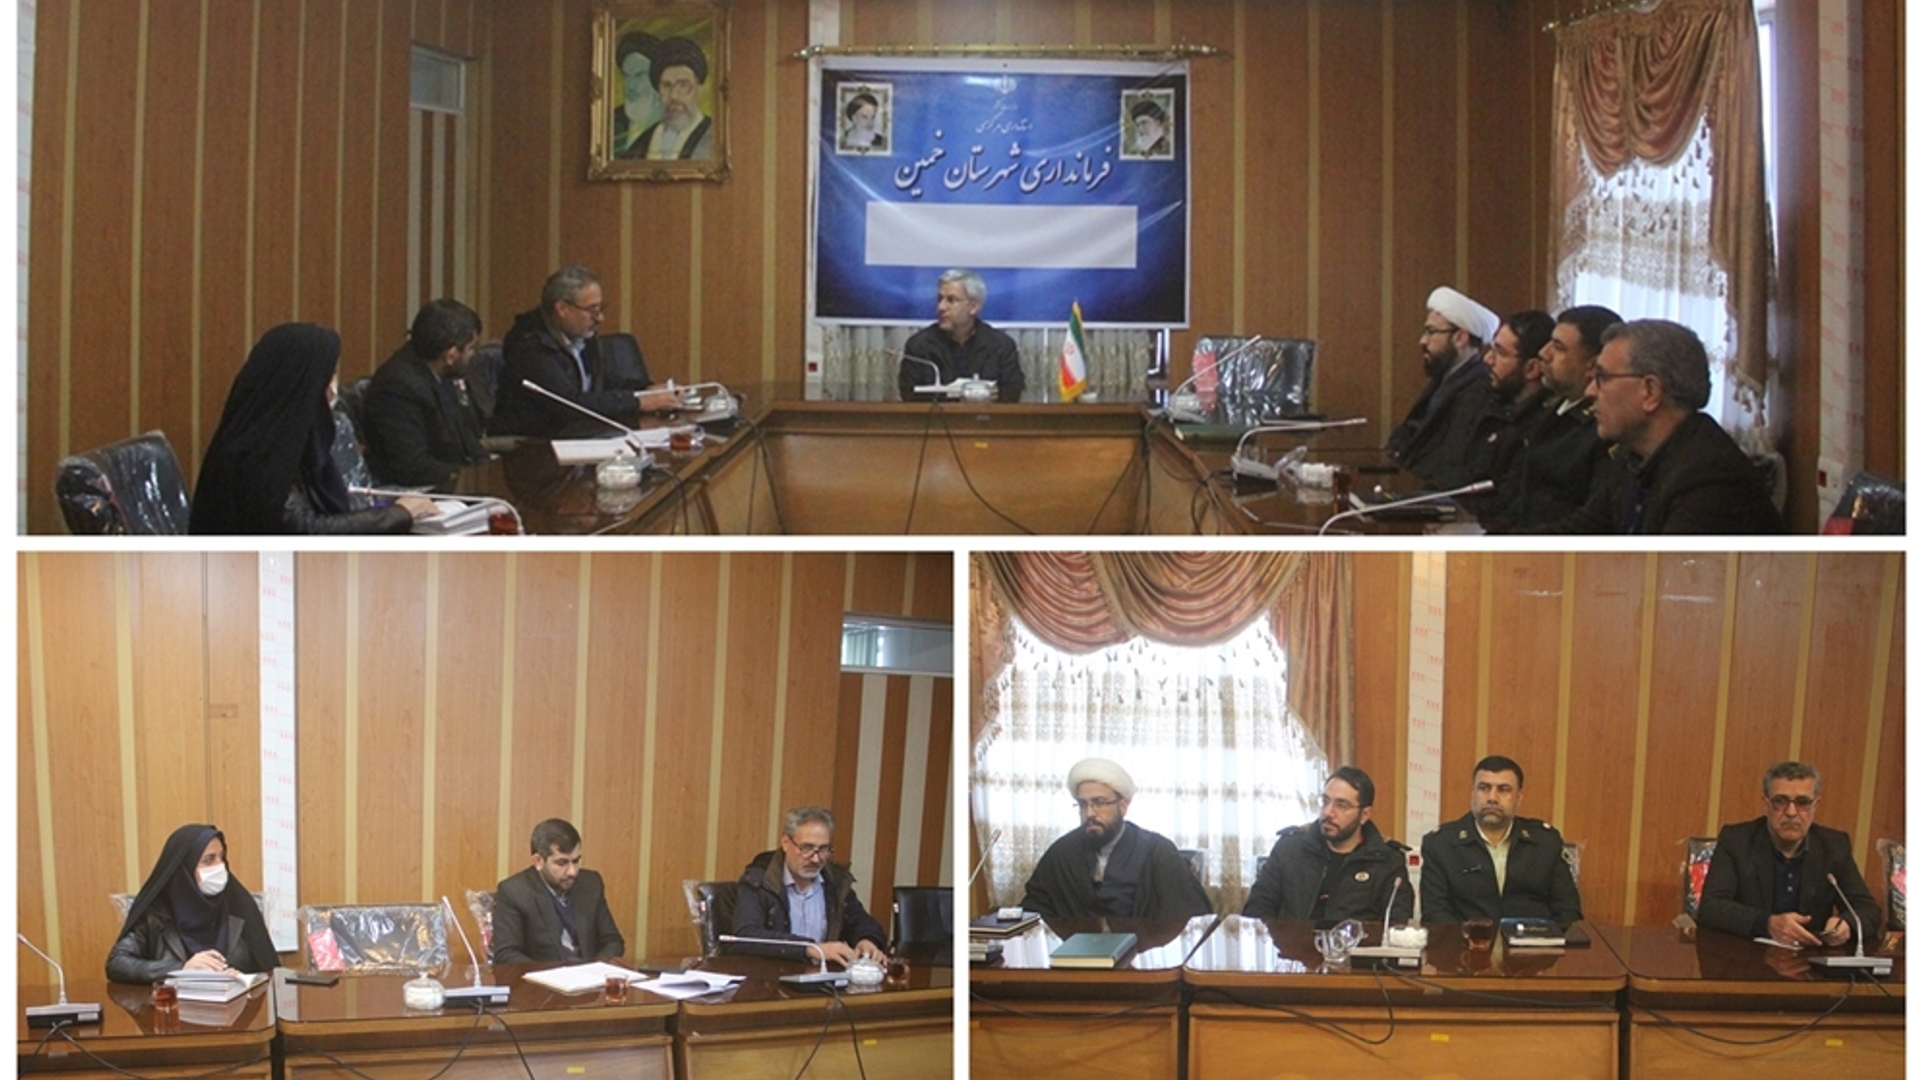 هشتمین جلسه کارگروه تخصصی شورای فرهنگ عمومی شهرستان خمین برگزار شد